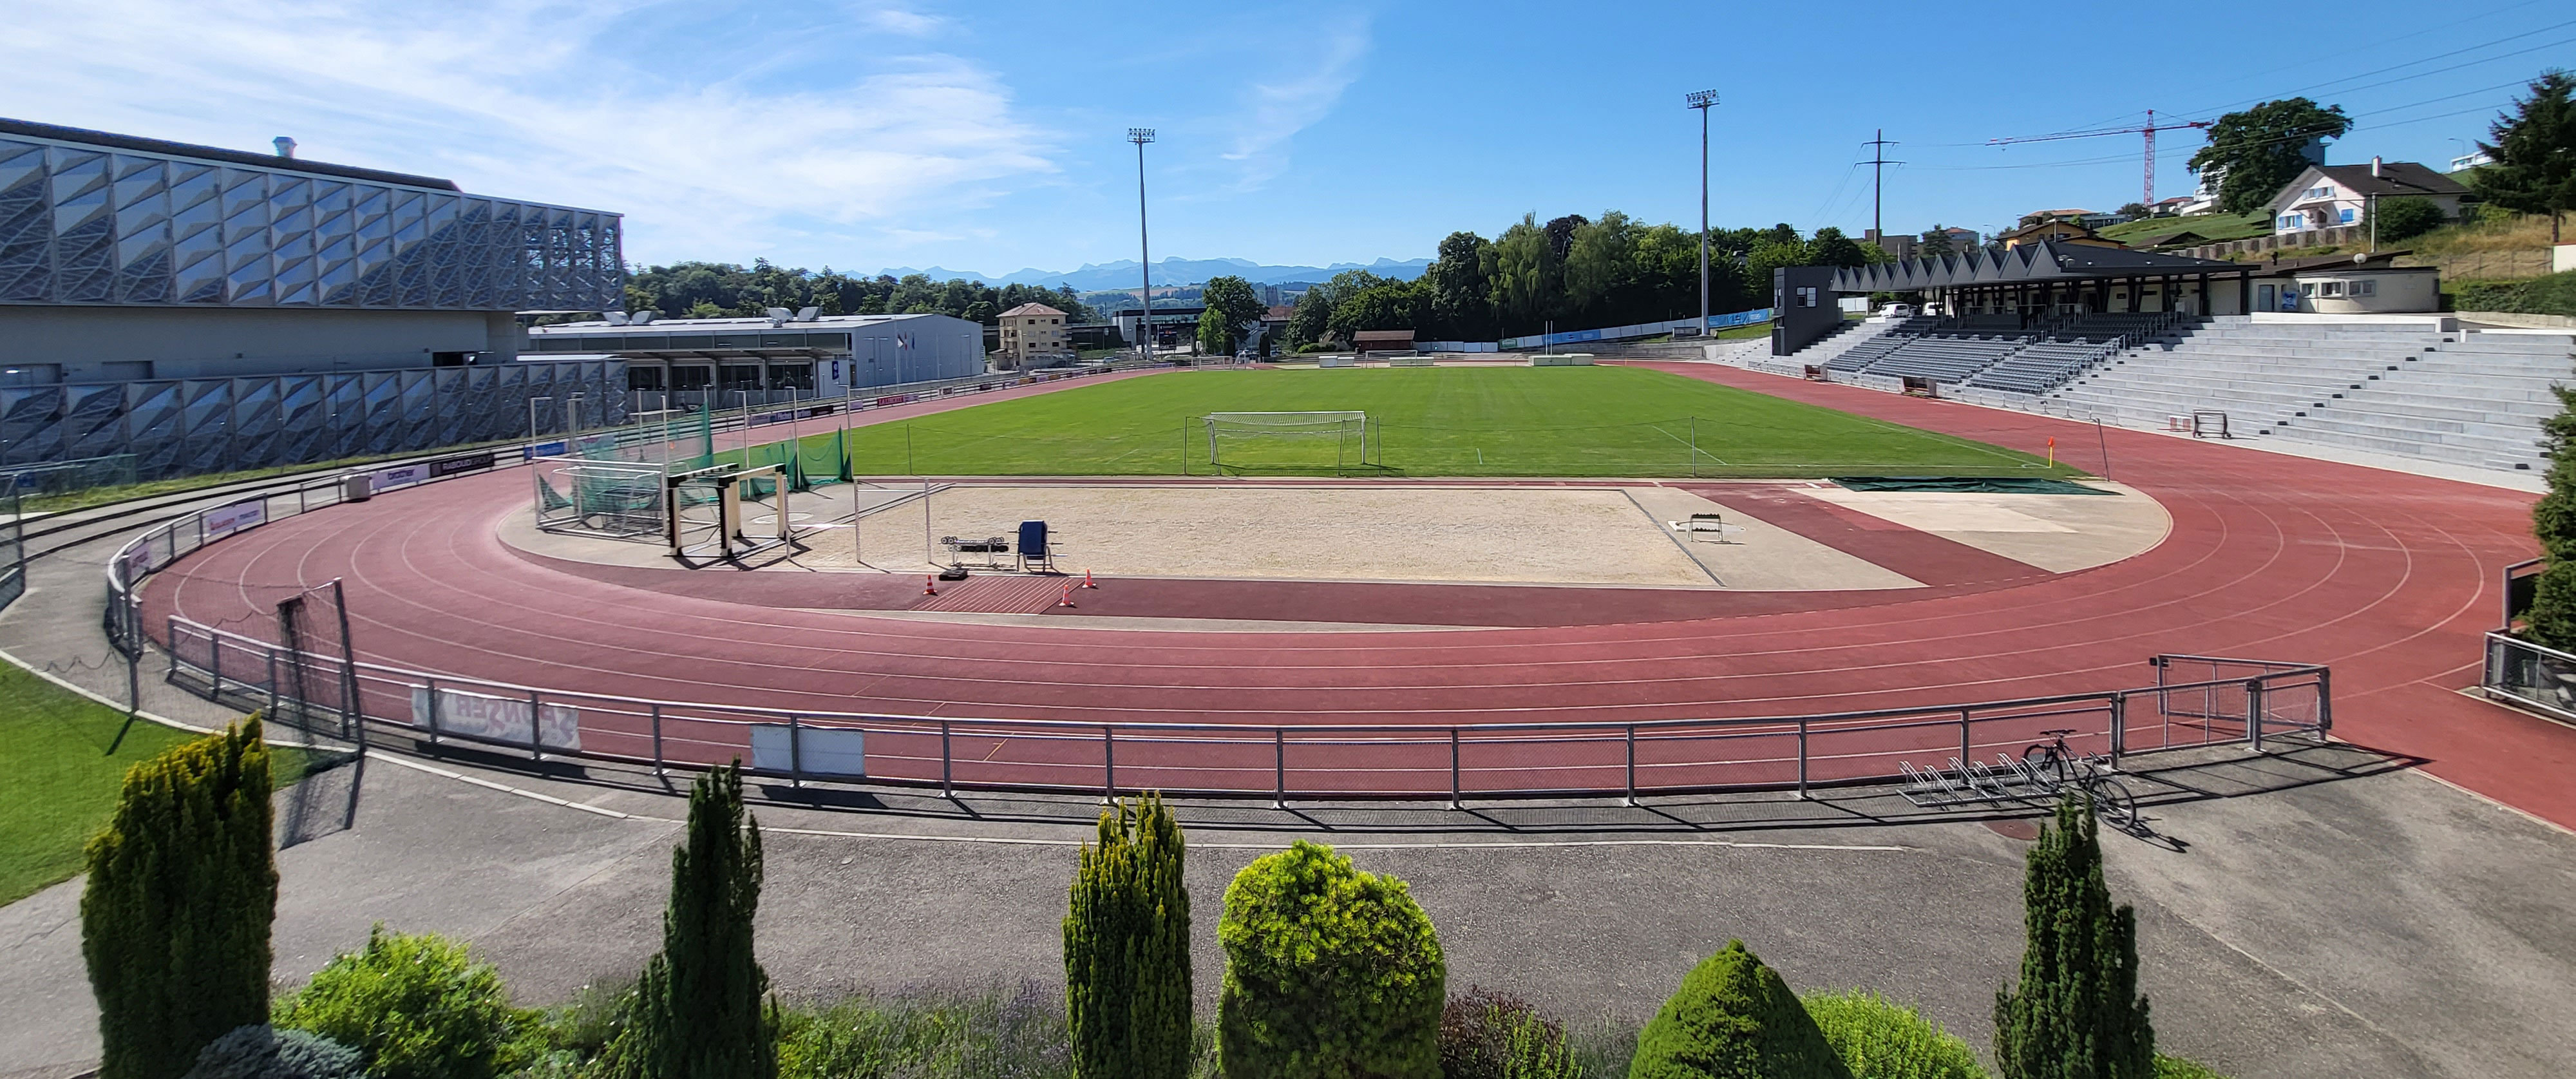 Stade St-Léonard